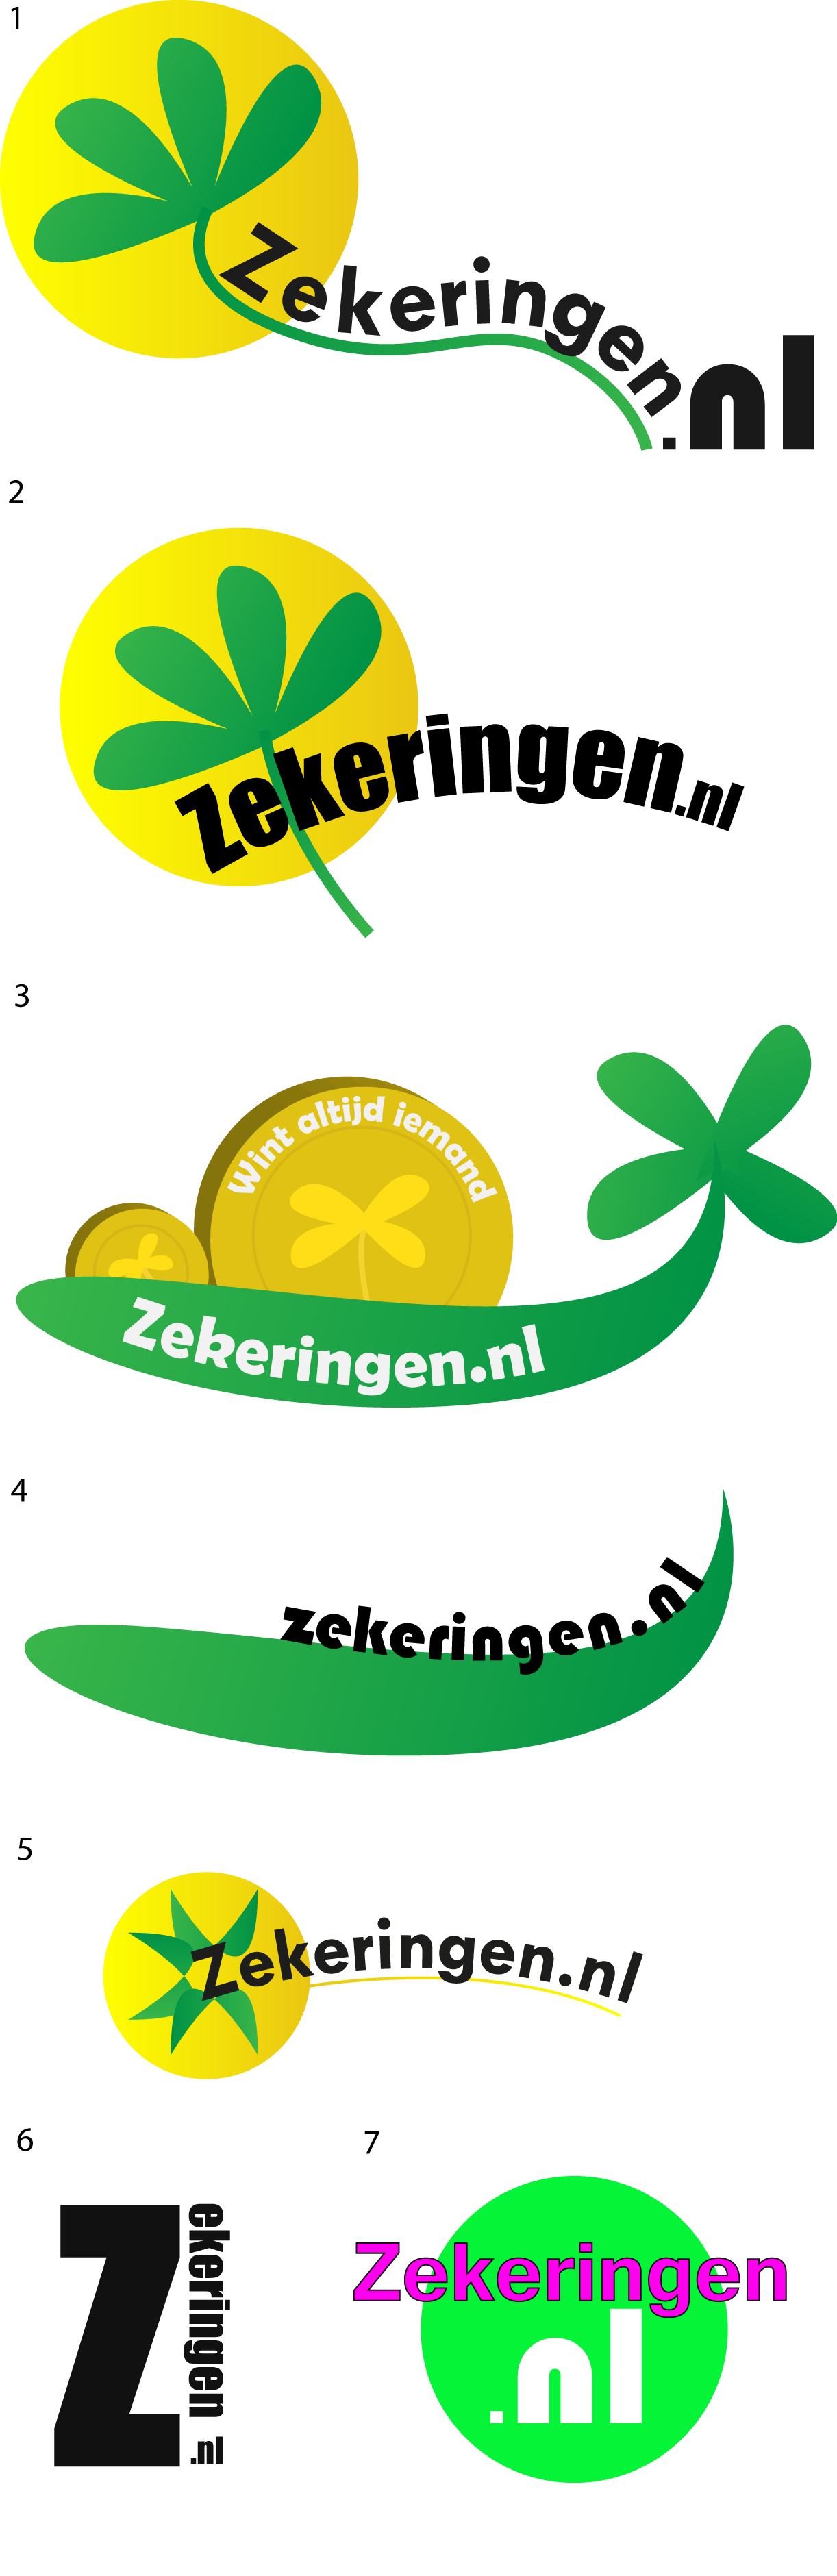 Some of the mockup logos made for Zekeringen.nl